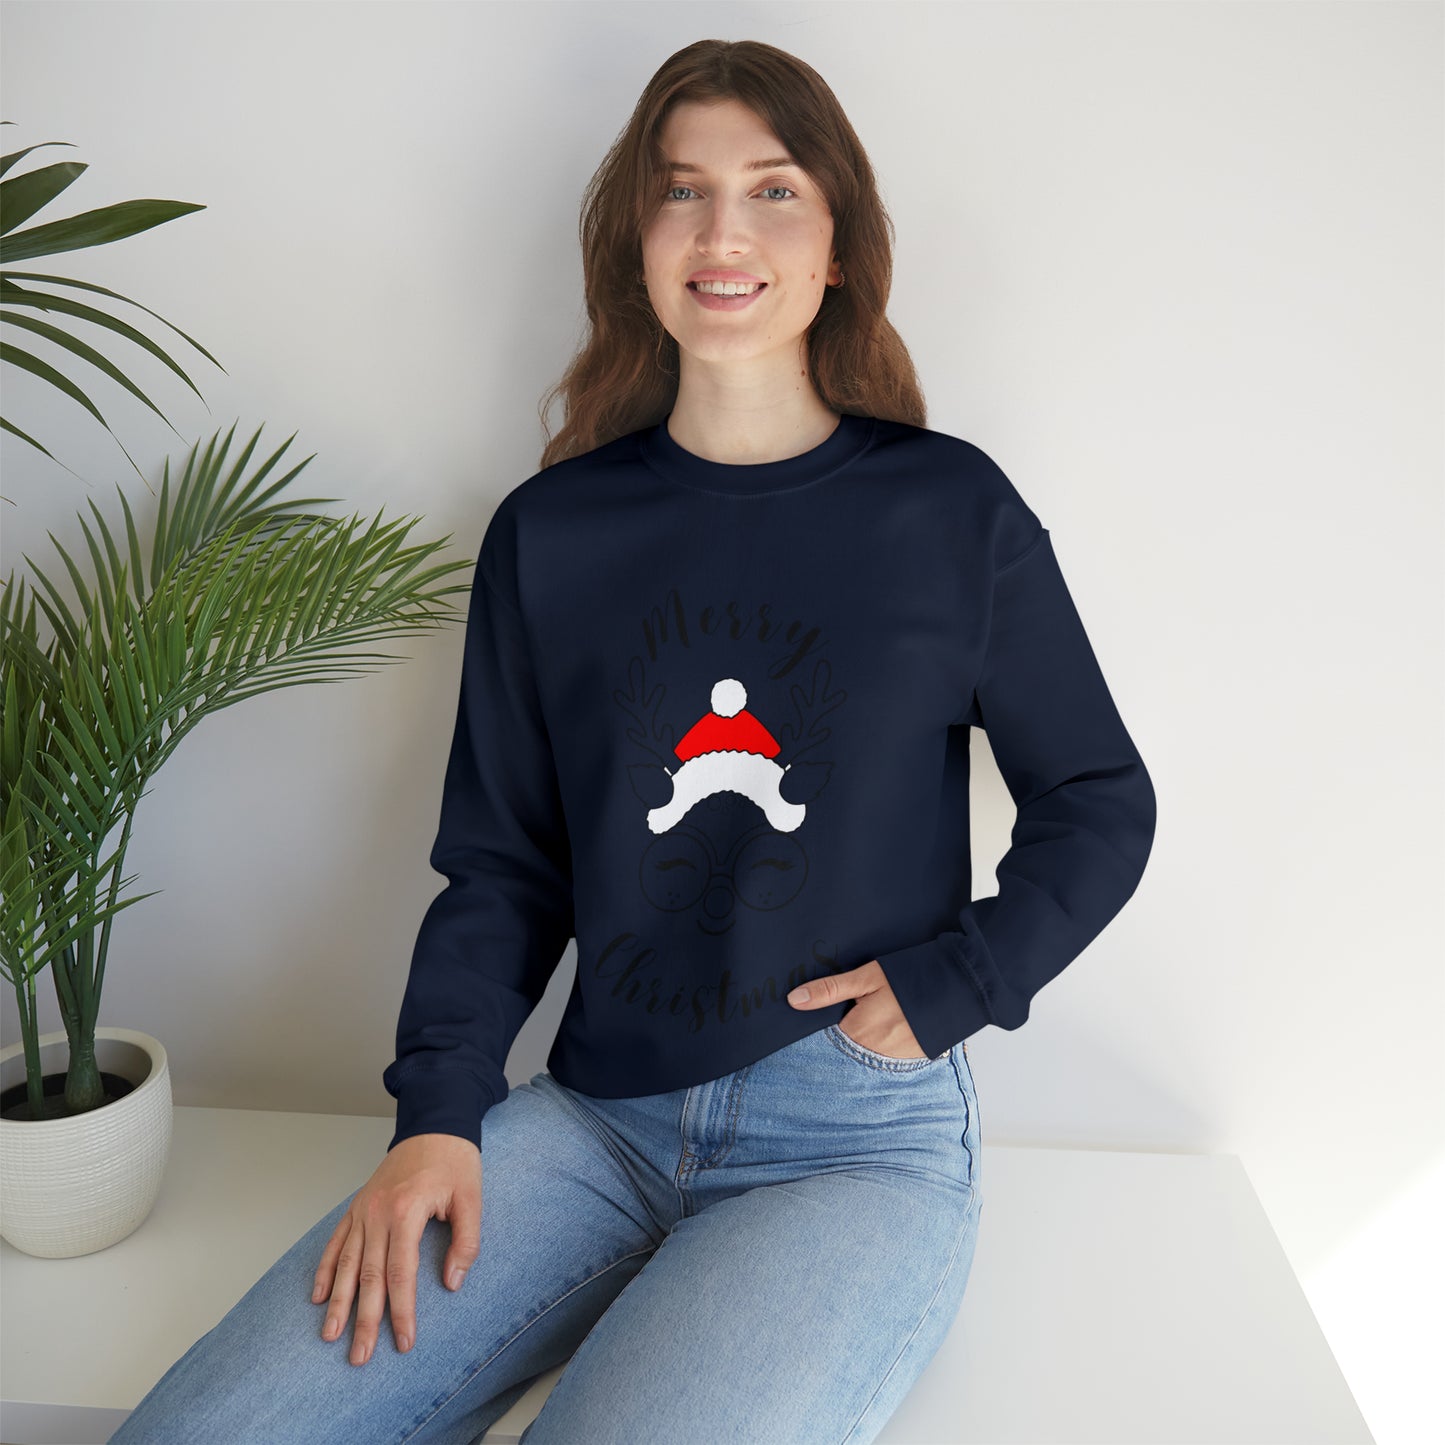 Merry Christmas Crewneck Sweatshirt